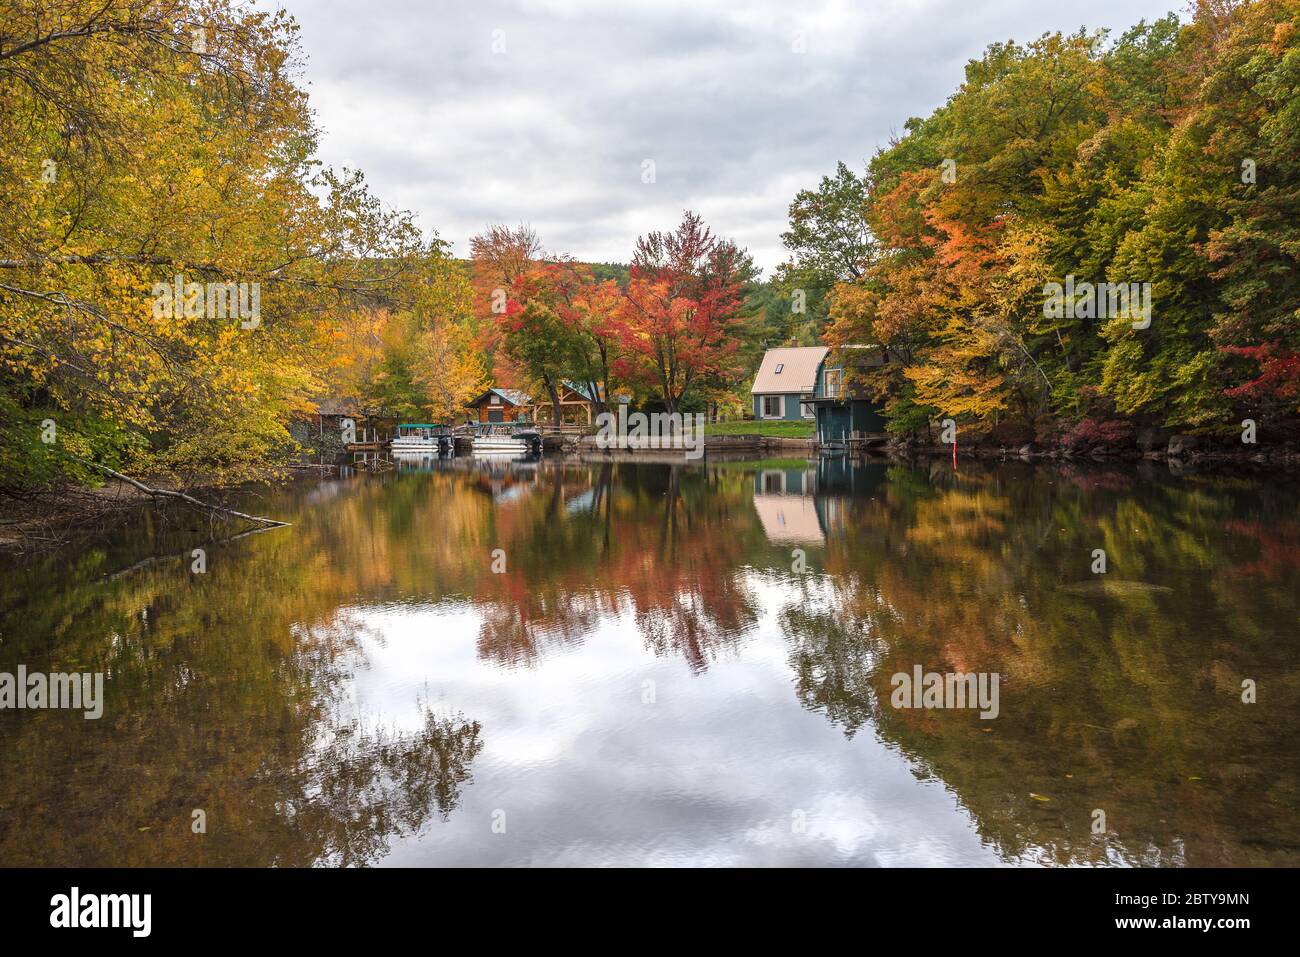 Bootshäuser und Boote entlang eines Flusses mit bewaldeten Ufern an einem bewölkten Herbsttag. Atemberaubende Herbstfarben und Reflektionen im Wasser. Stockfoto